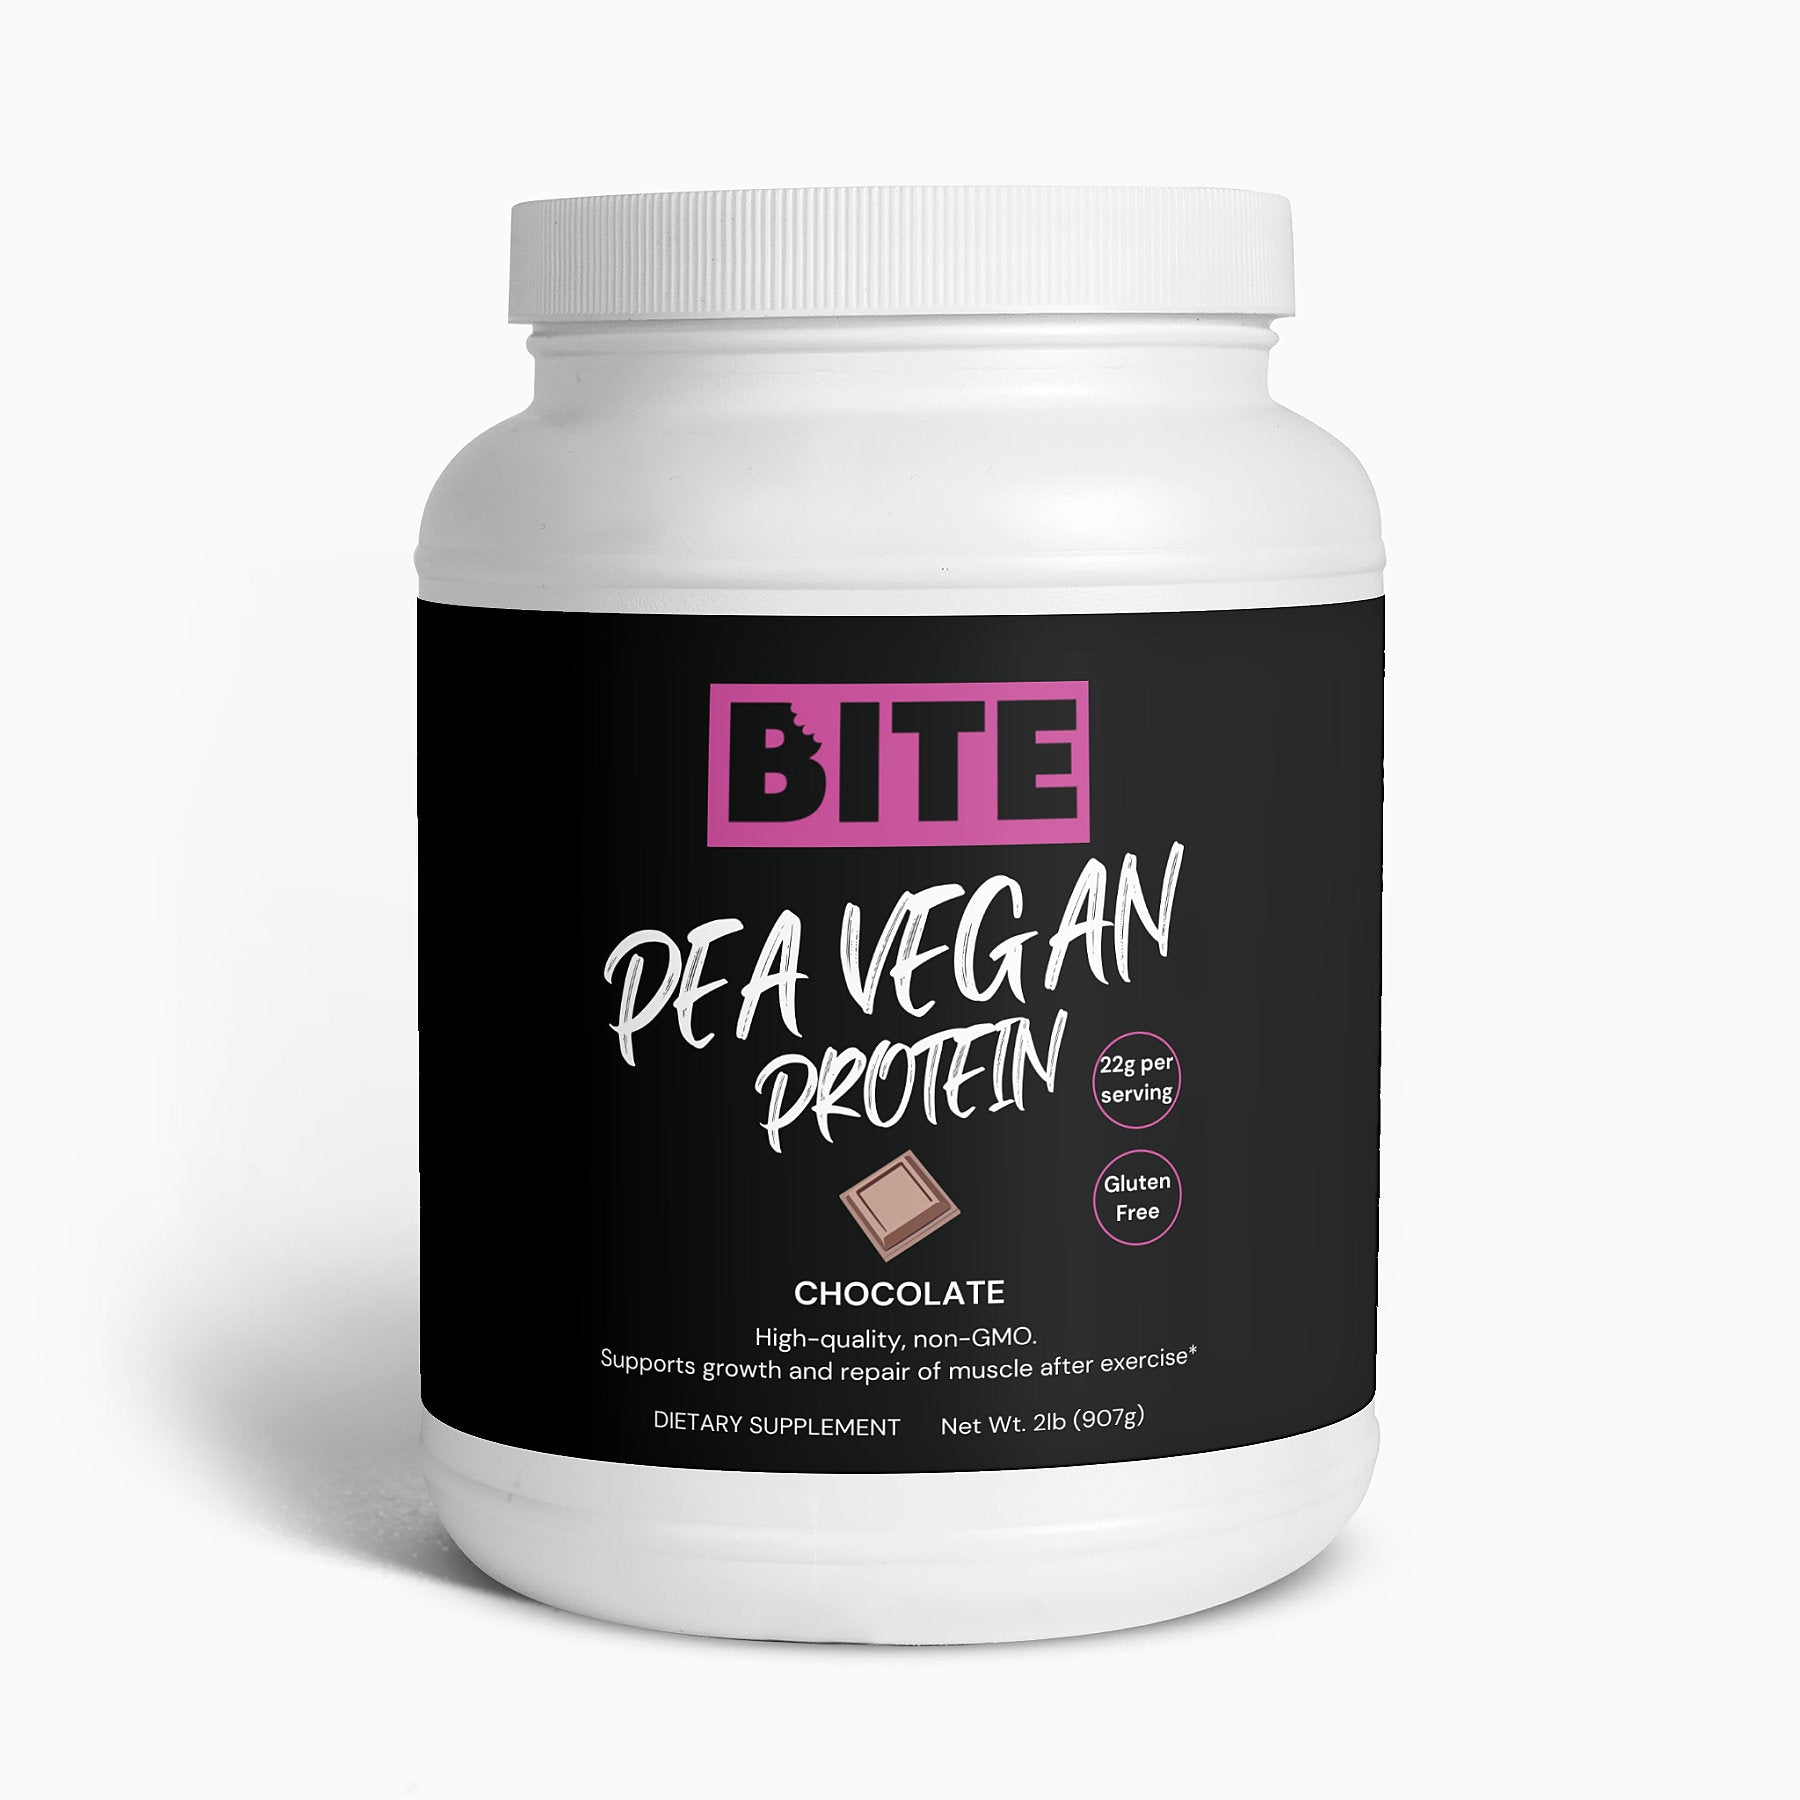 Vegan pea protein